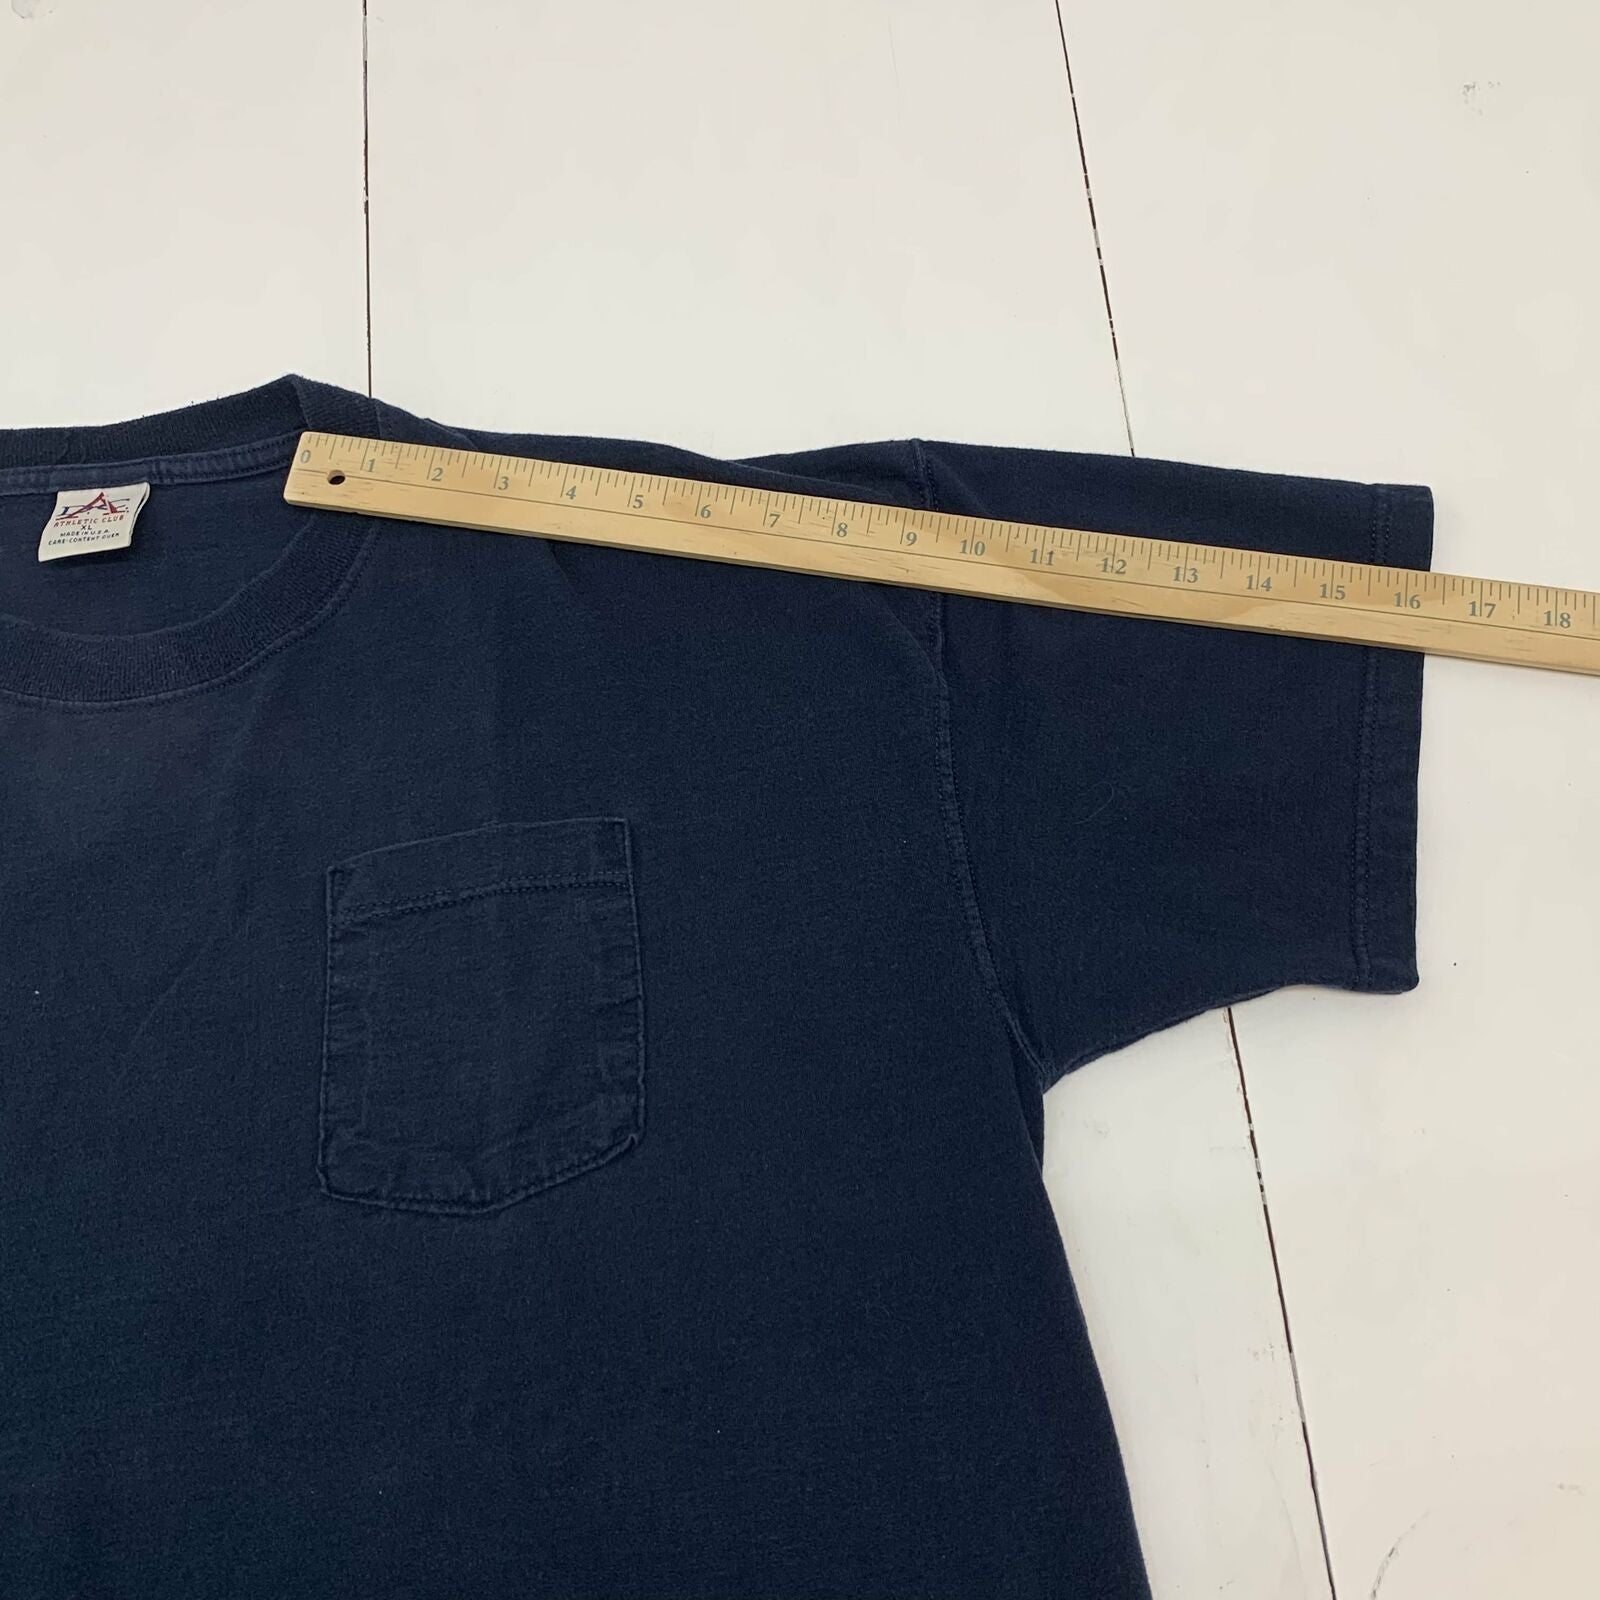 Vintage Men's Shirt - Blue - XXXL